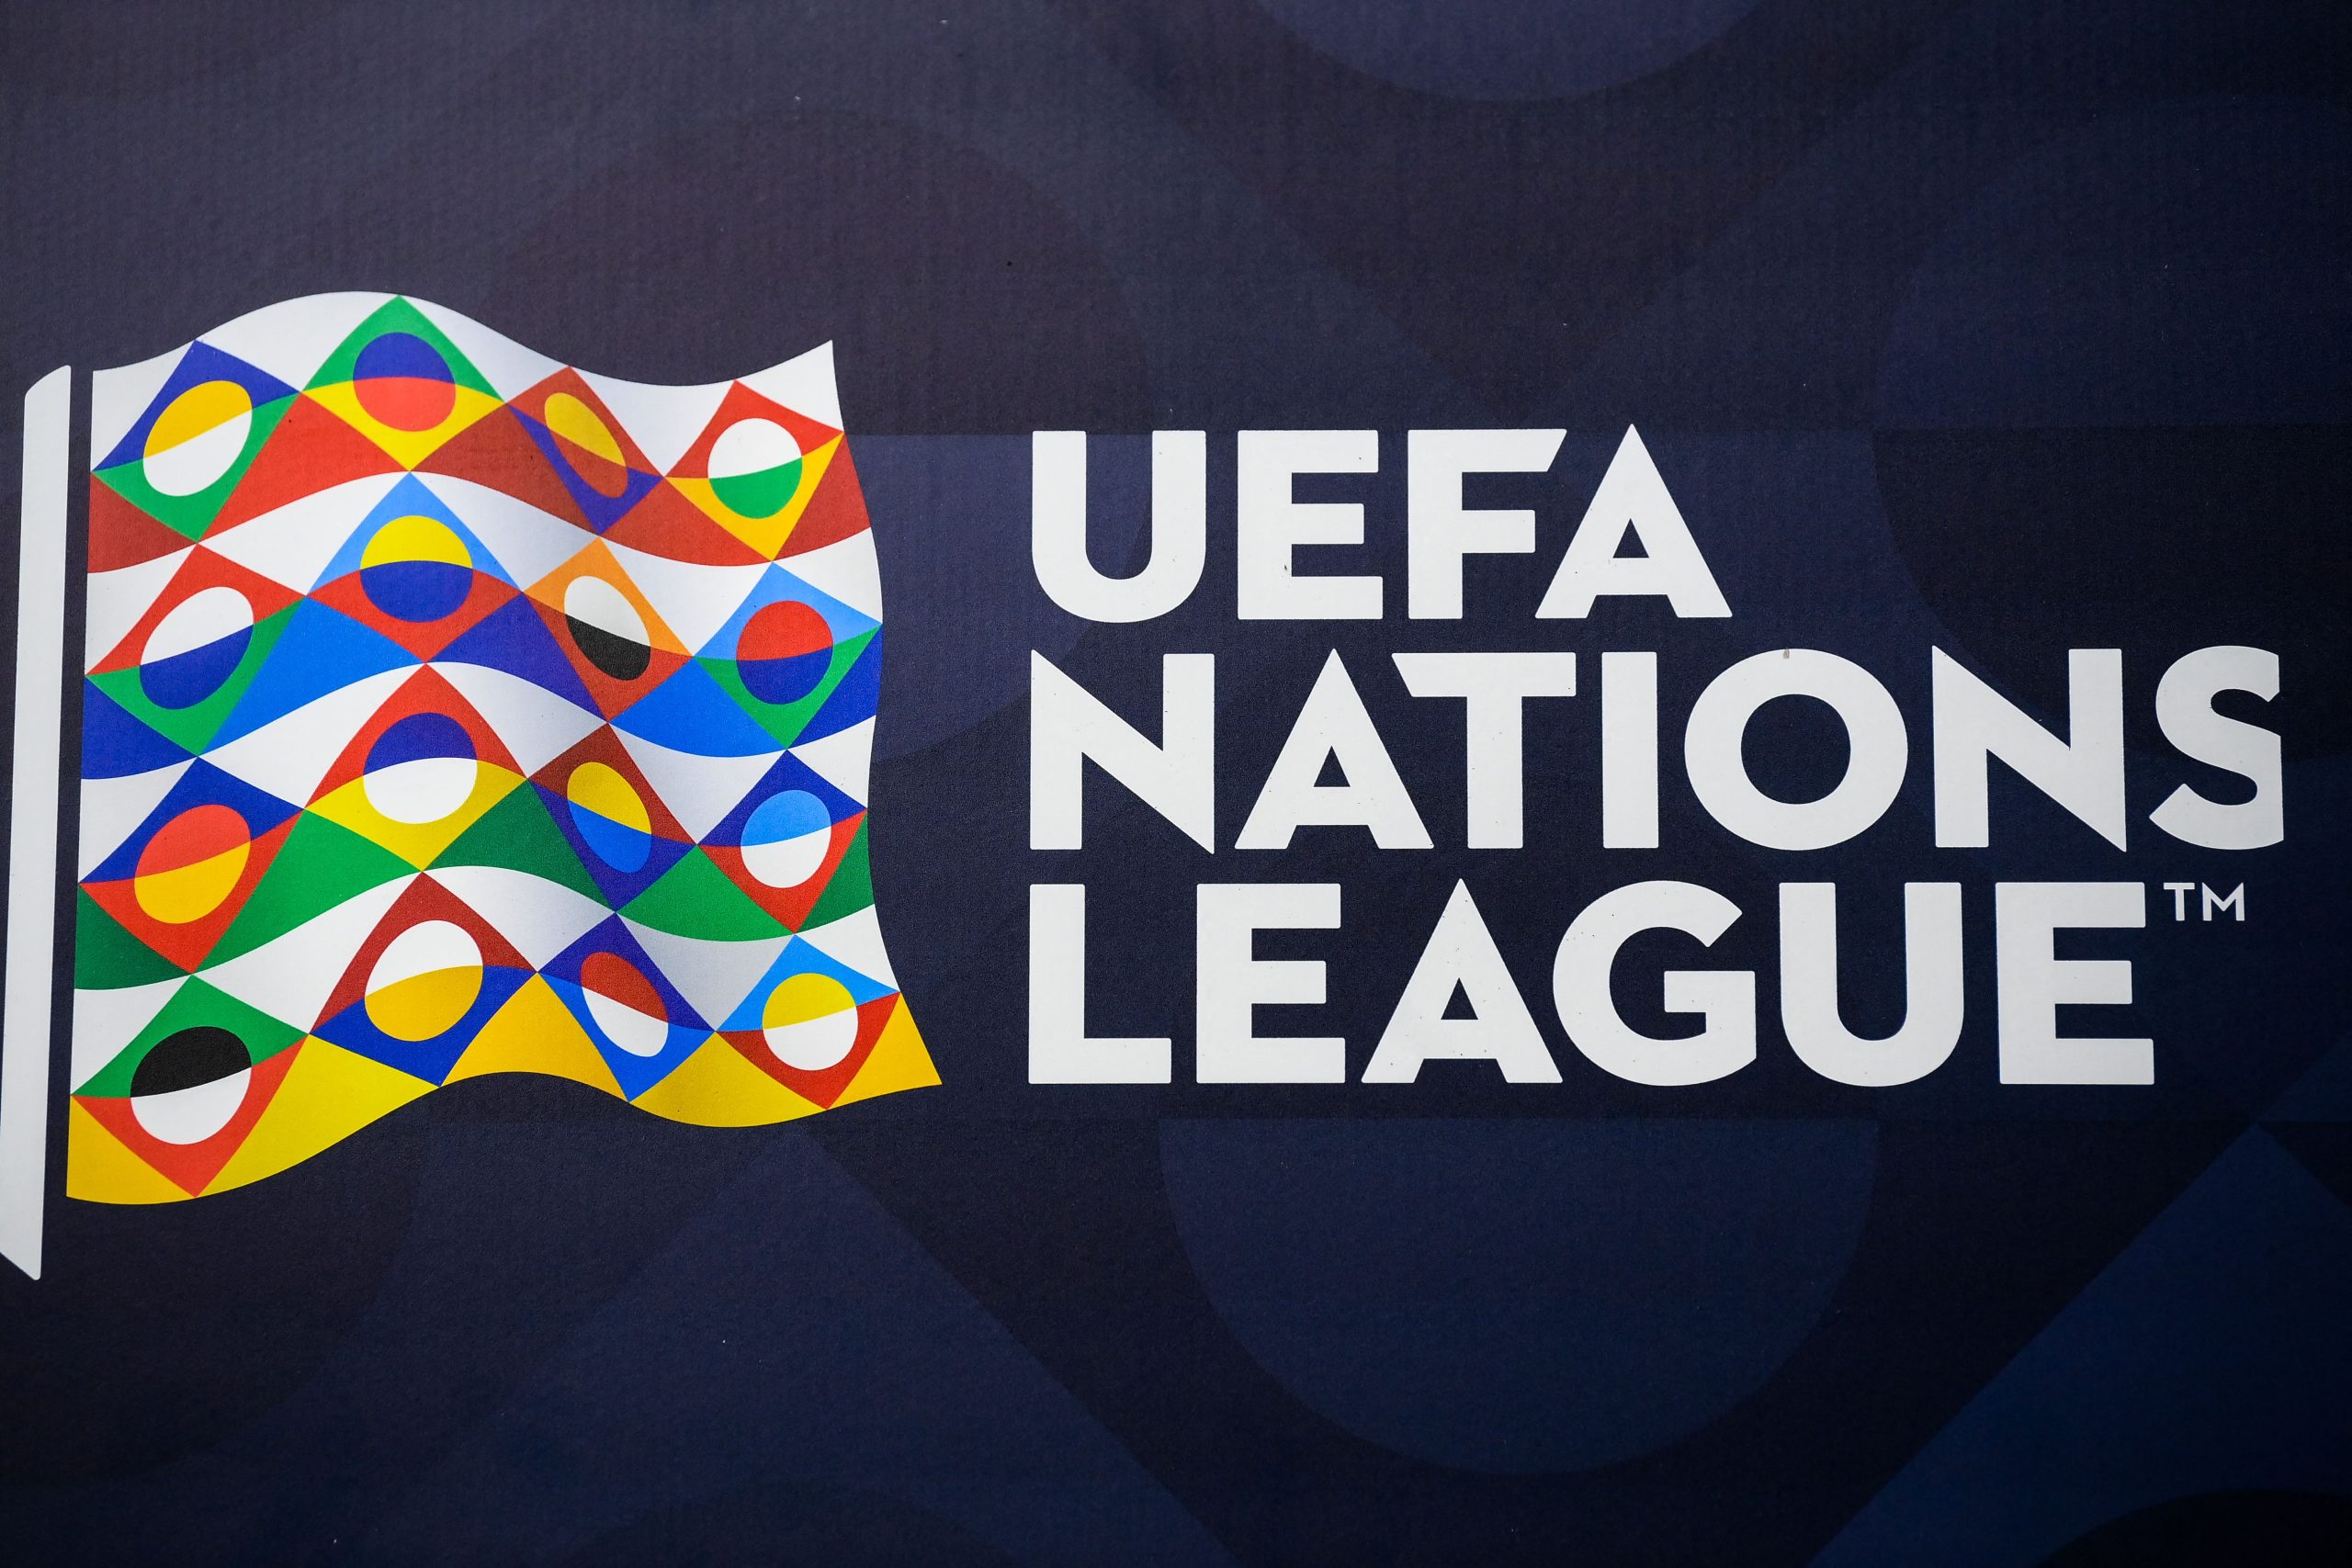 Esta será a quarta edição da Nations League (Foto: FRANCK FIFE | AFP via Getty Images)